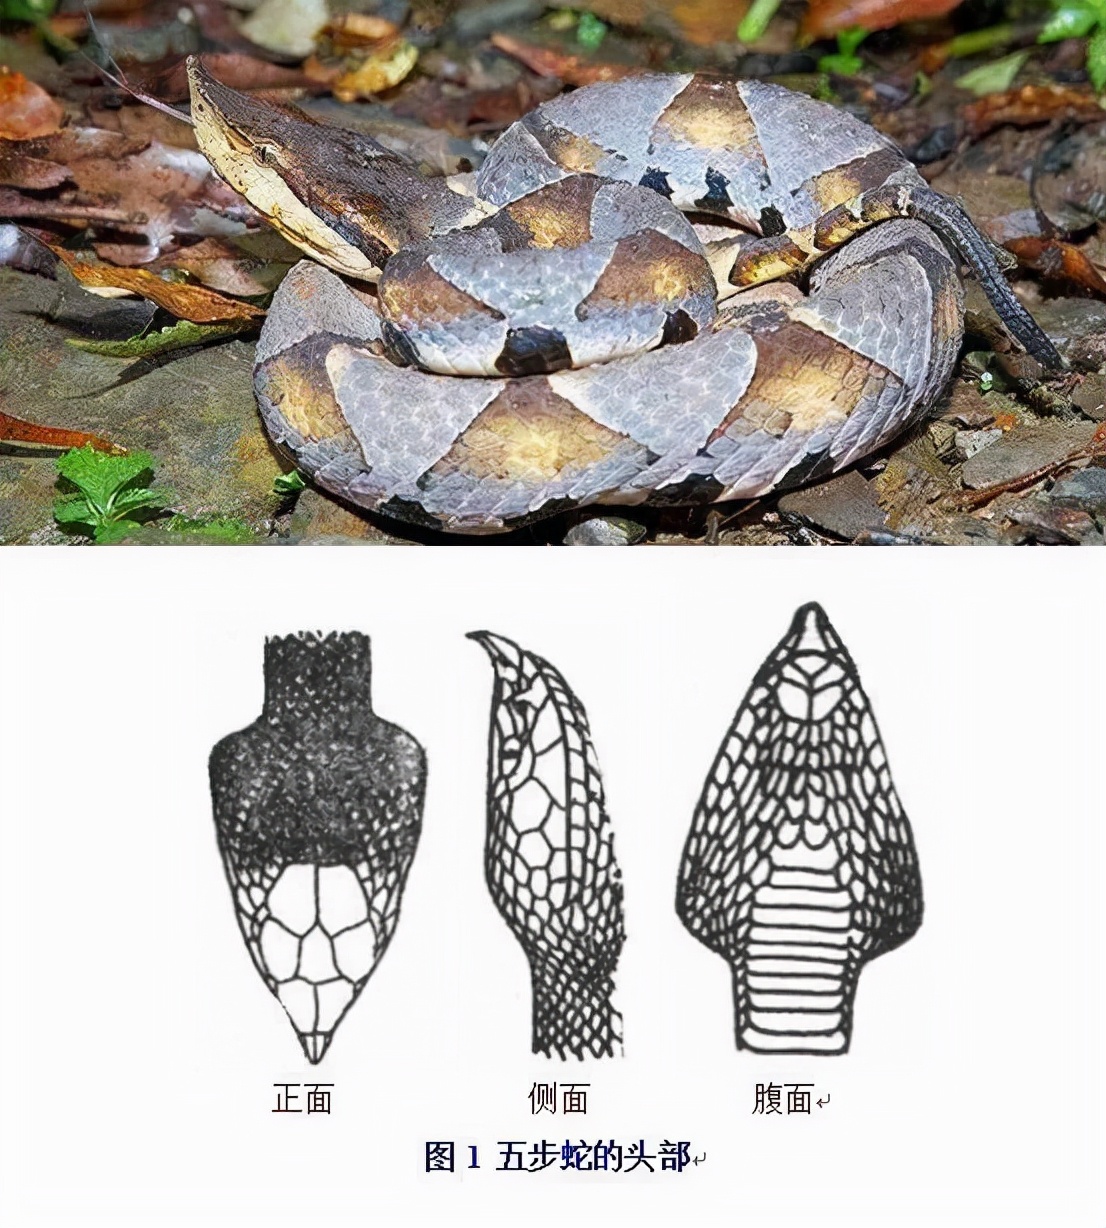 中国十大毒蛇排行榜图片